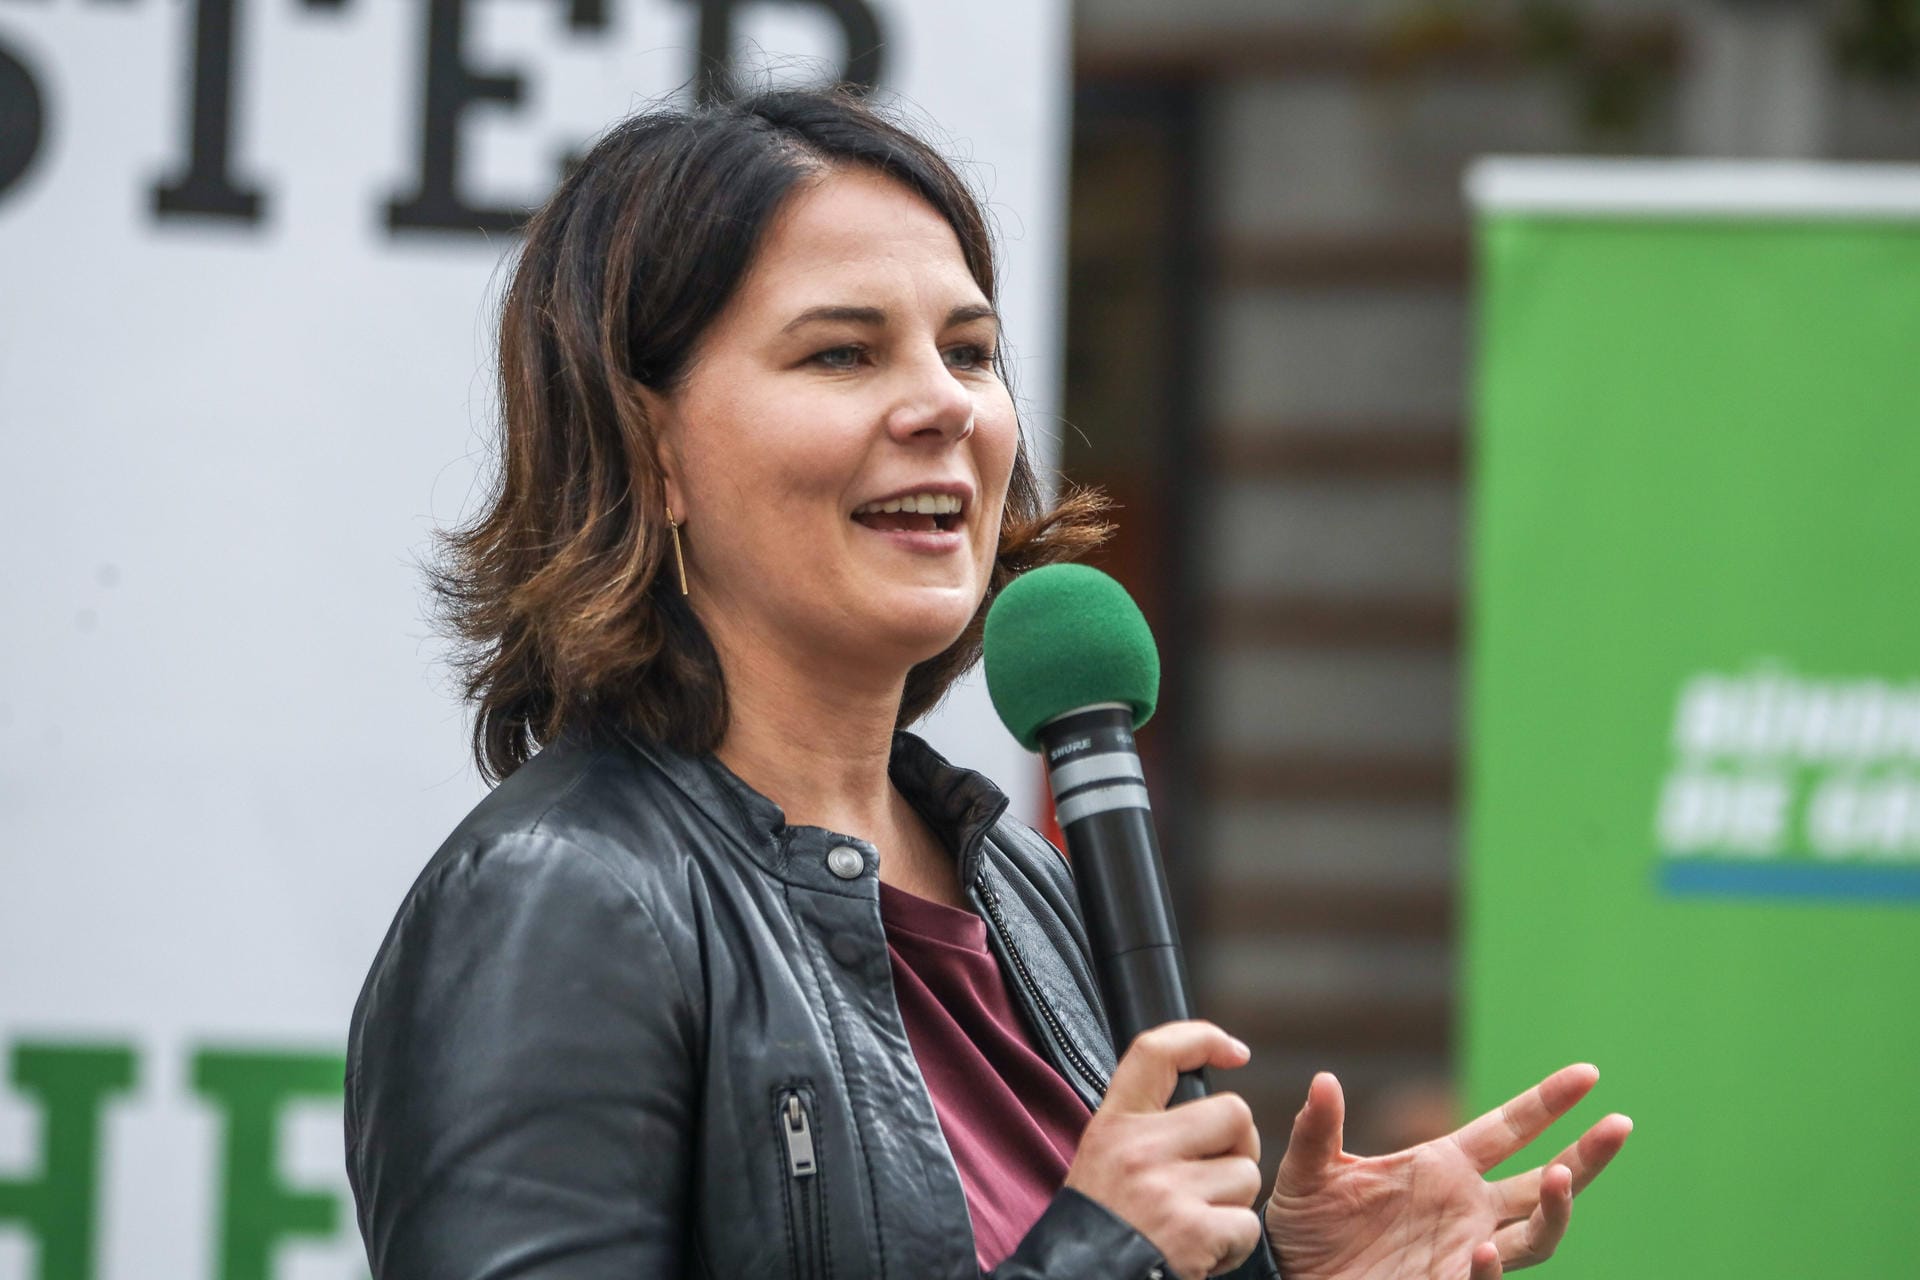 Parallel zu ihrer Doktorarbeit von 2009 bis 2013 an der Freien Universität Berlin war Baerbock bereits Landesvorsitzende der Grünen in Brandenburg. 2013 wurde sie dann auch Mitglied der Bundestagsfraktion der Grünen.